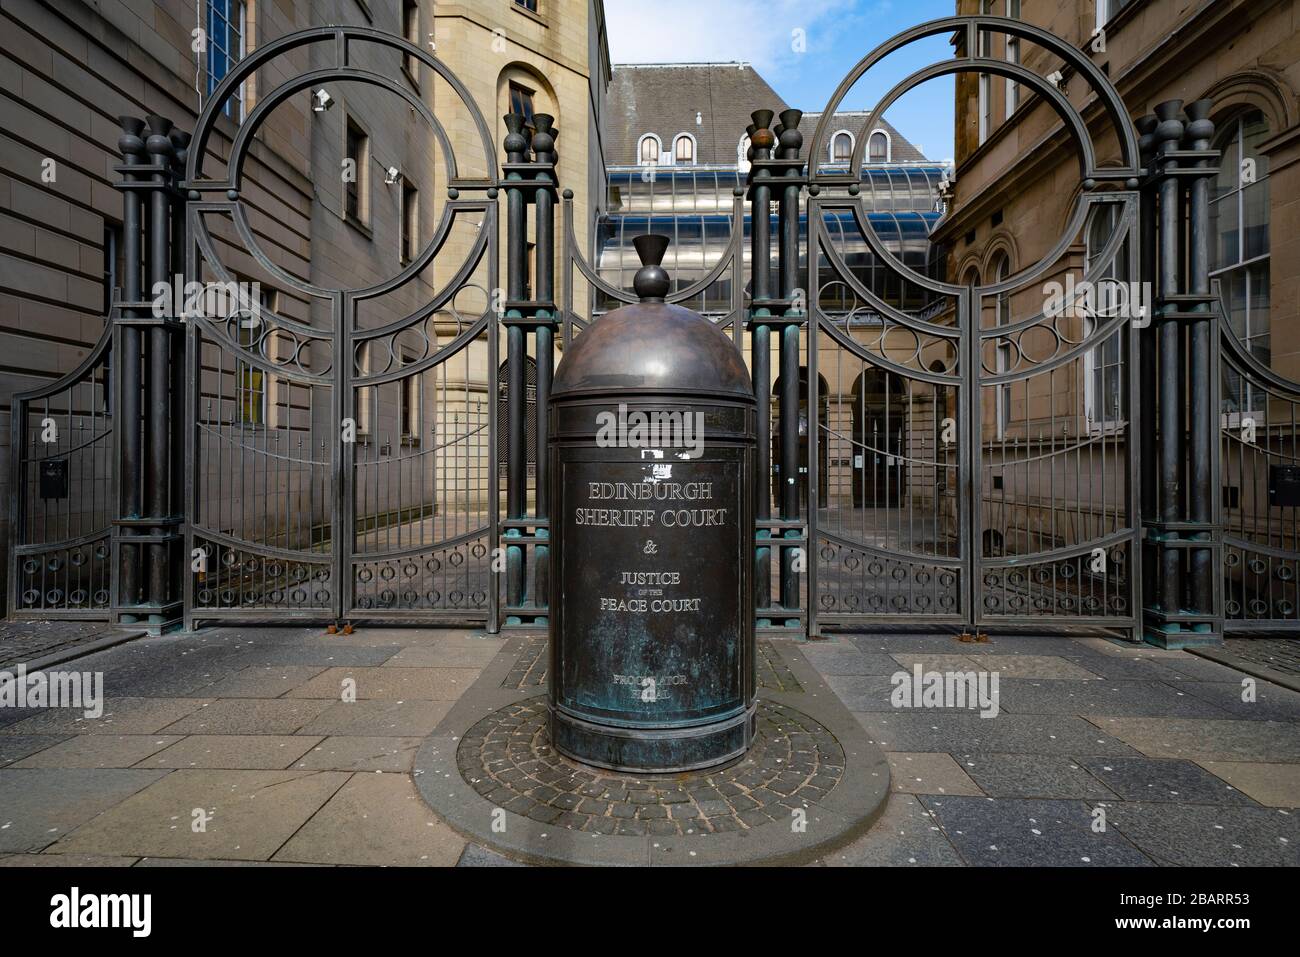 Außenansicht des Edinburgh Sheriff Court and Justice of the Peace Court in Edinburgh, Schottland, Großbritannien Stockfoto